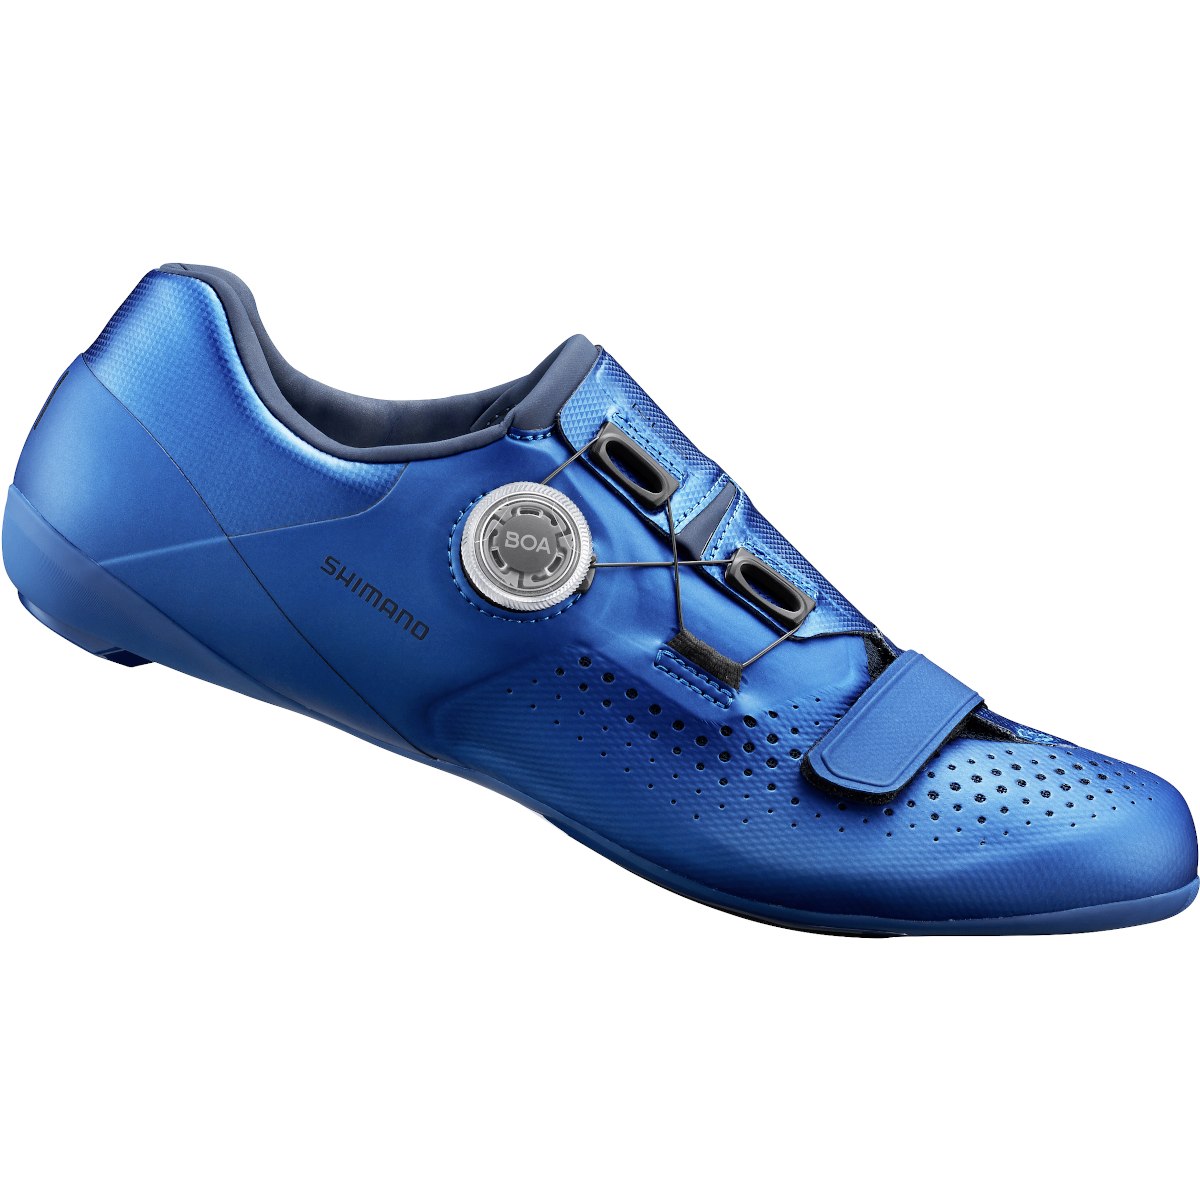 Produktbild von Shimano SH-RC500 Rennradschuh - blue